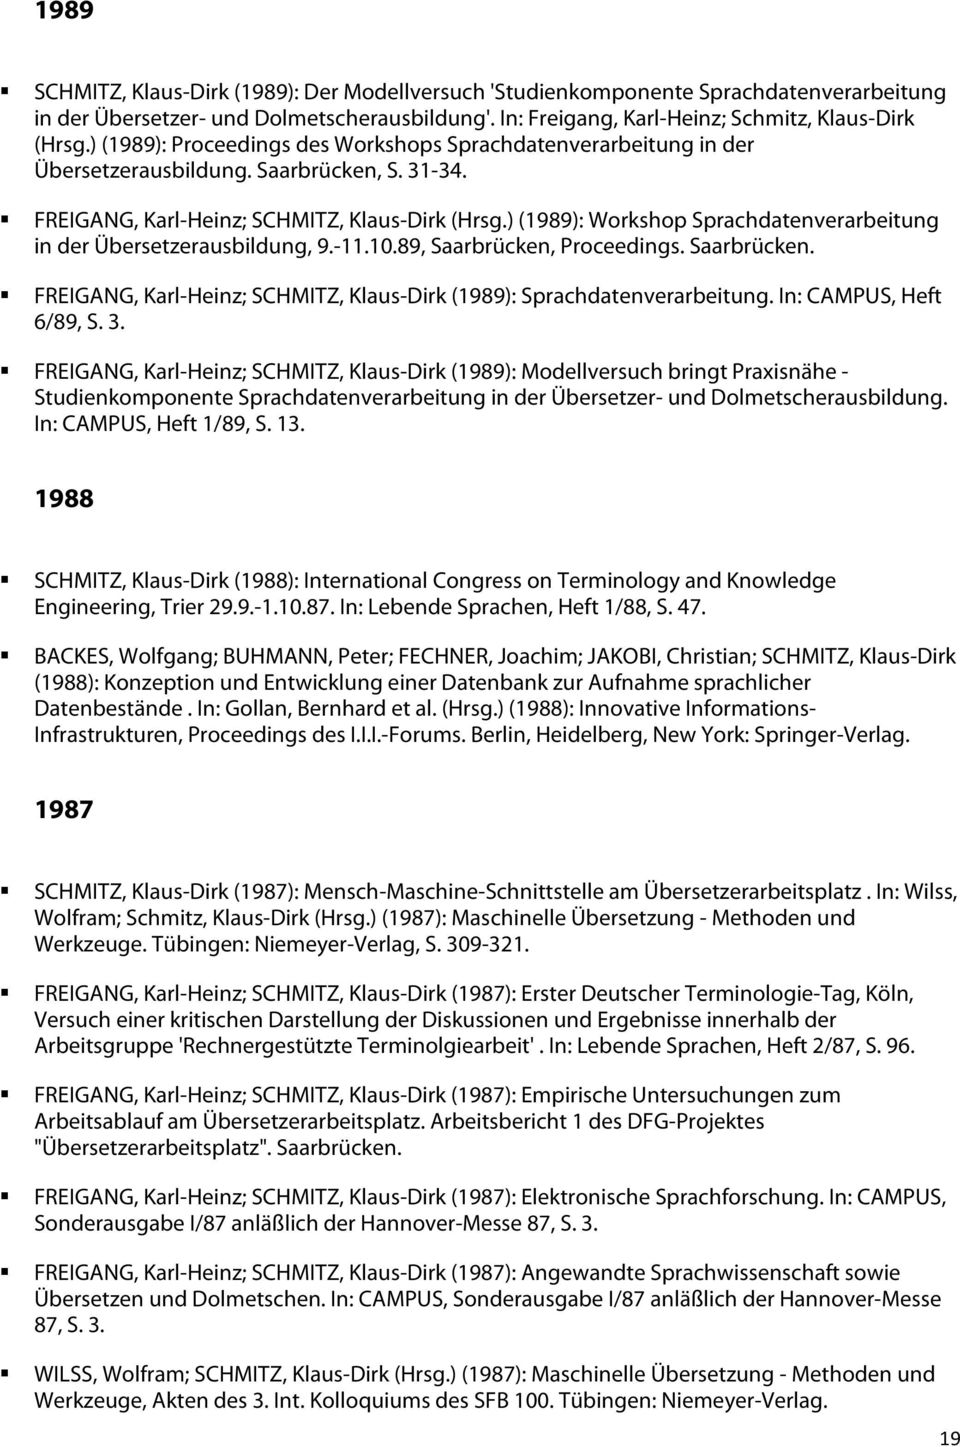 ) (1989): Workshop Sprachdatenverarbeitung in der Übersetzerausbildung, 9.-11.10.89, Saarbrücken, Proceedings. Saarbrücken. FREIGANG, Karl-Heinz; SCHMITZ, Klaus-Dirk (1989): Sprachdatenverarbeitung.